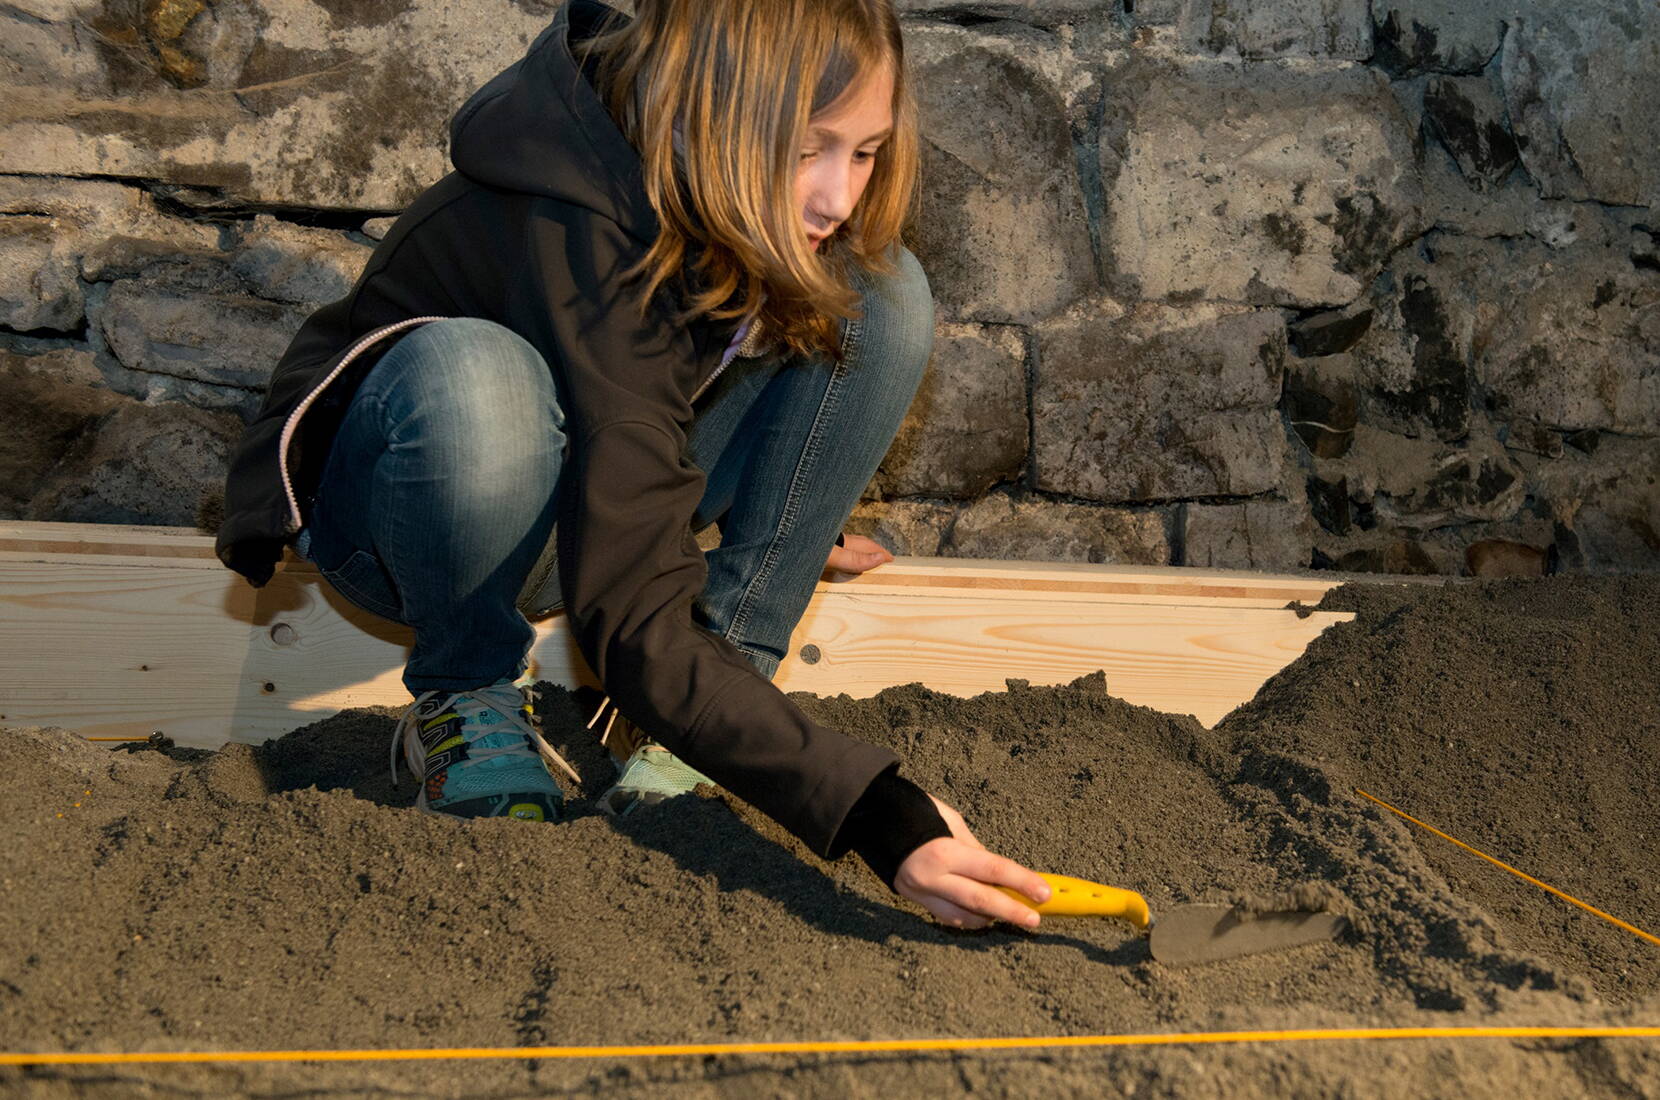 Familienausflug Schloss Werdenberg. Kleine ArchäologInnen heben unter der Leitung einer Fachperson entdeckte Fundstücke korrekt aus der Erde, ordnen sie und besprechen deren Bedeutung.